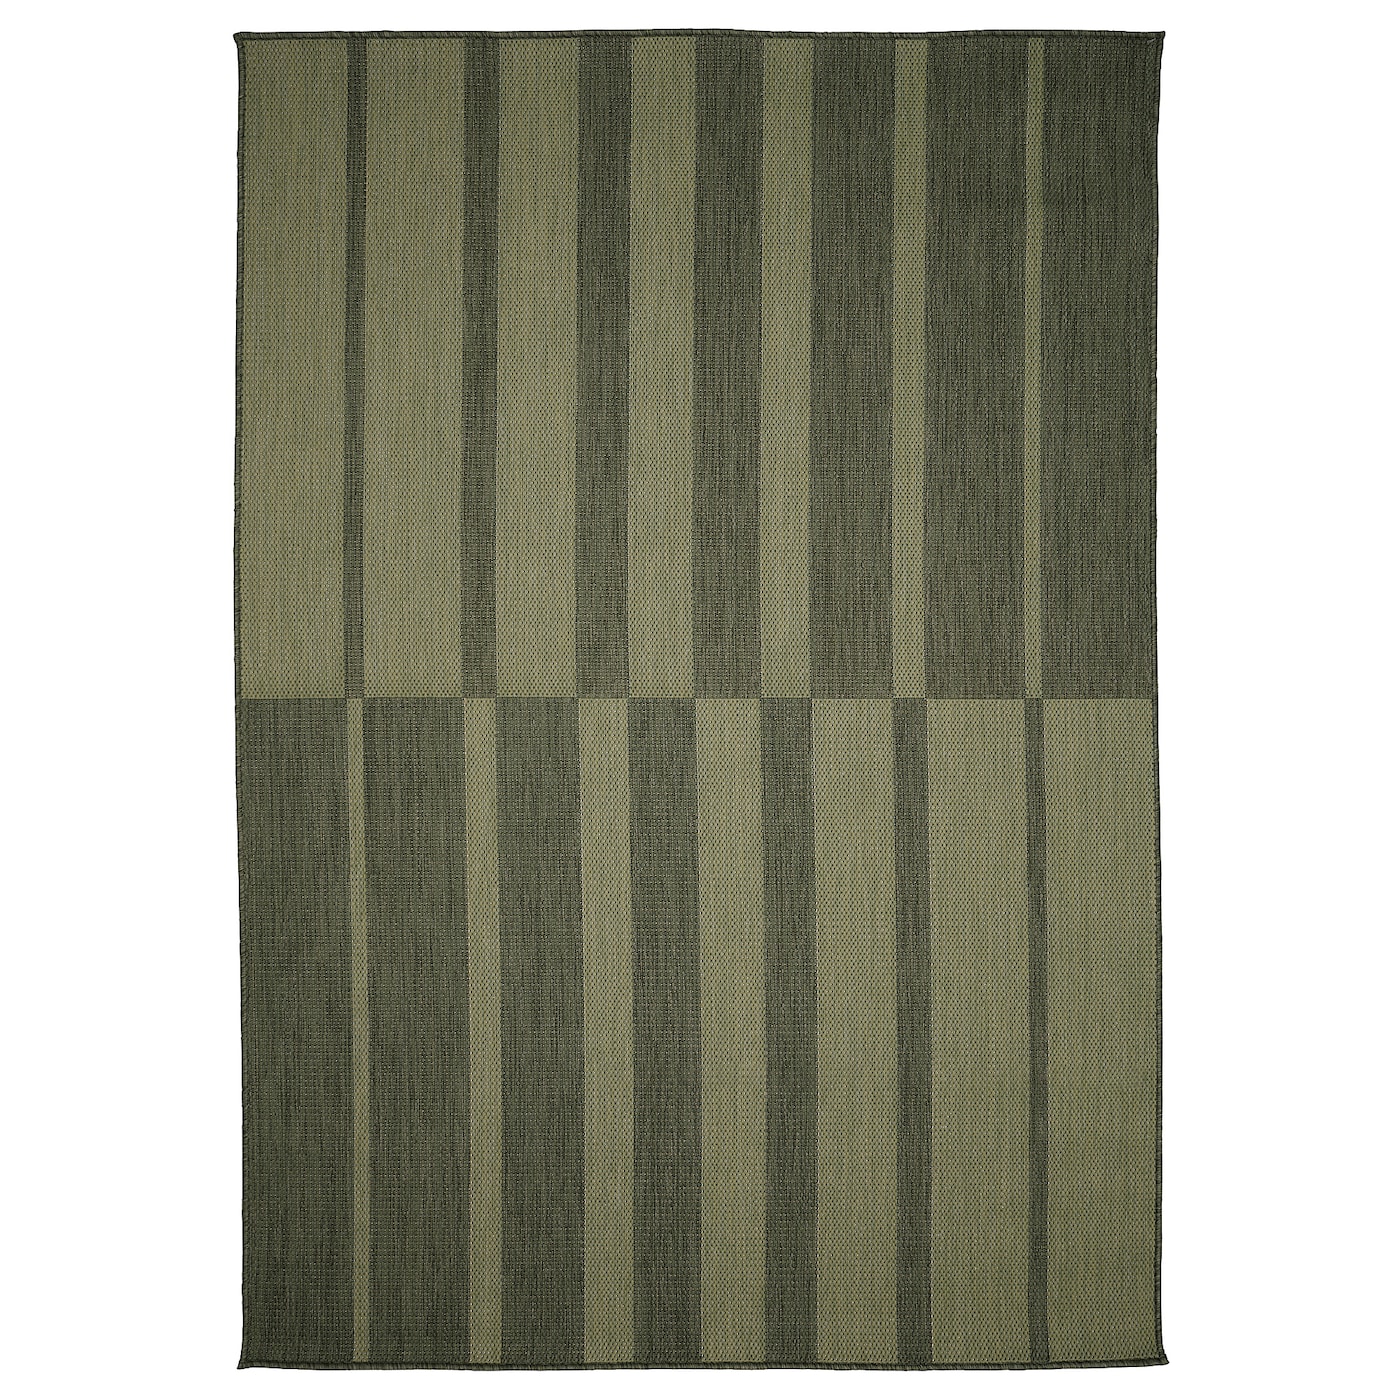 Текстильный ковер для дома и улицы - IKEA KANTSTOLPE/КАНТСТОЛП ИКЕА, 230х160 см, зеленый